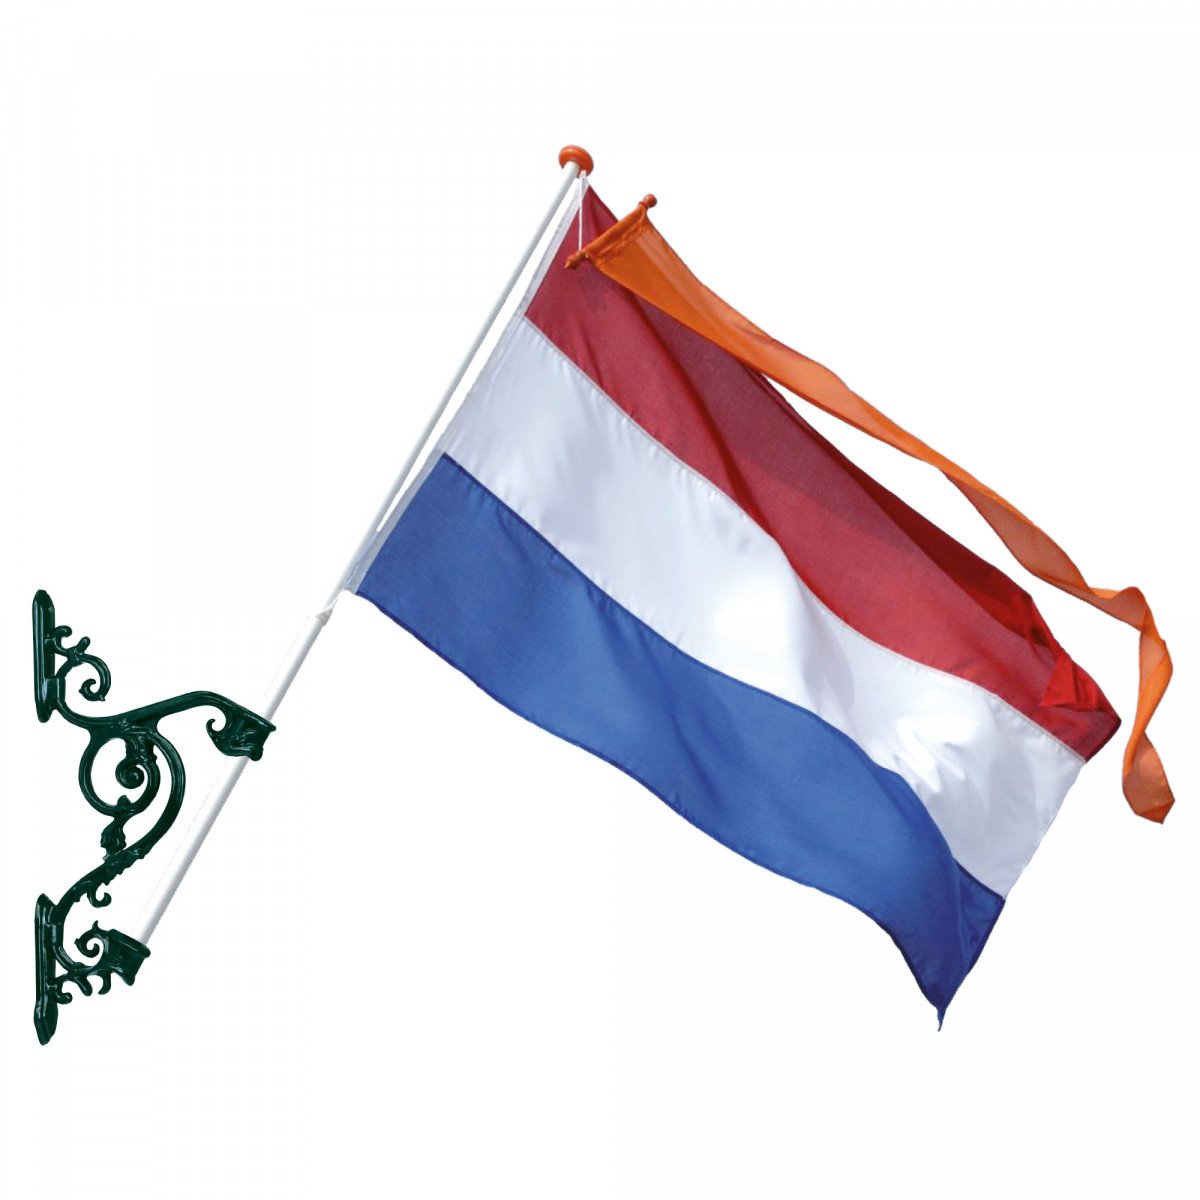 Landelijke geveldecoratie- vlaggenstokhouder groot brons- officieel KS kwaliteitsproduct- handmade